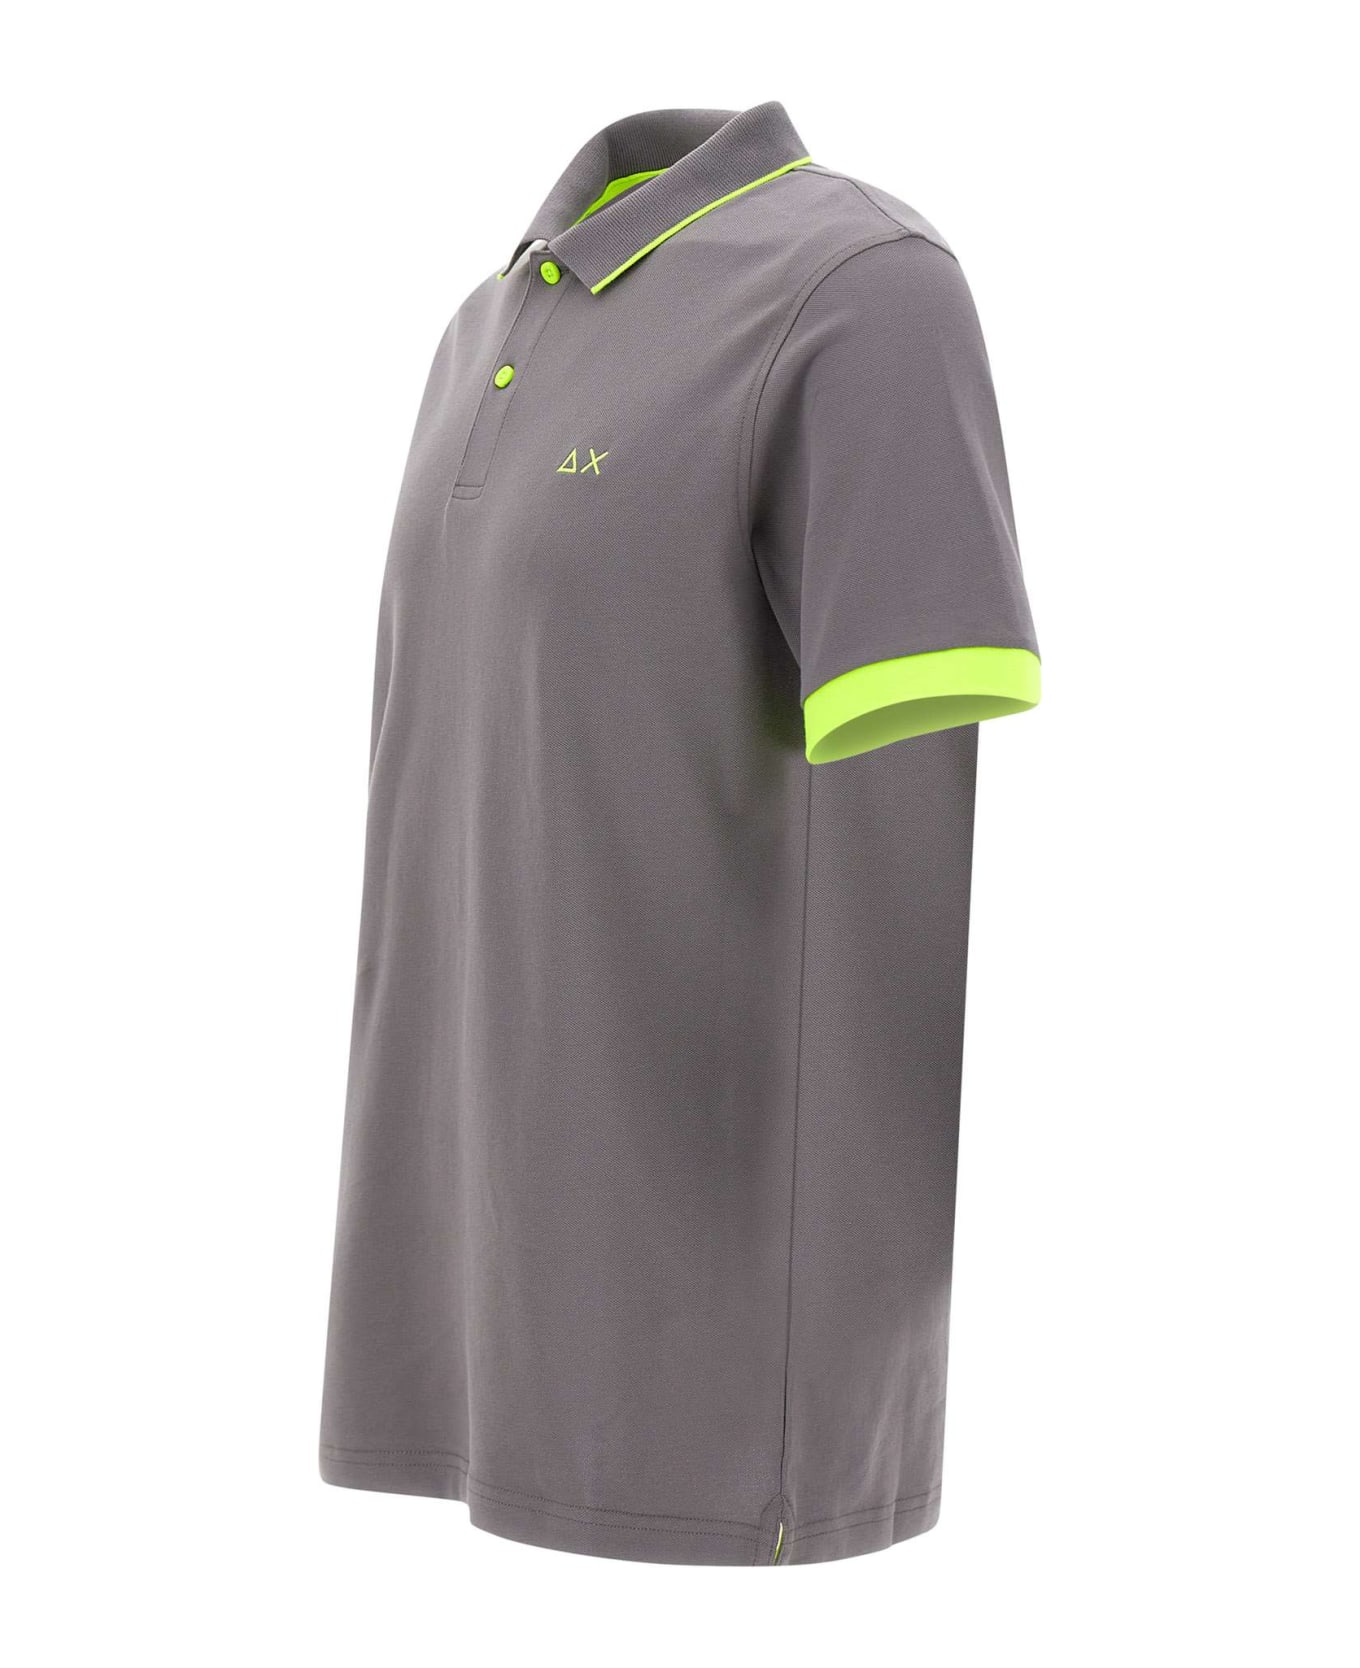 Sun 68 "small Stripe" Cotton Polo Shirt - GREY